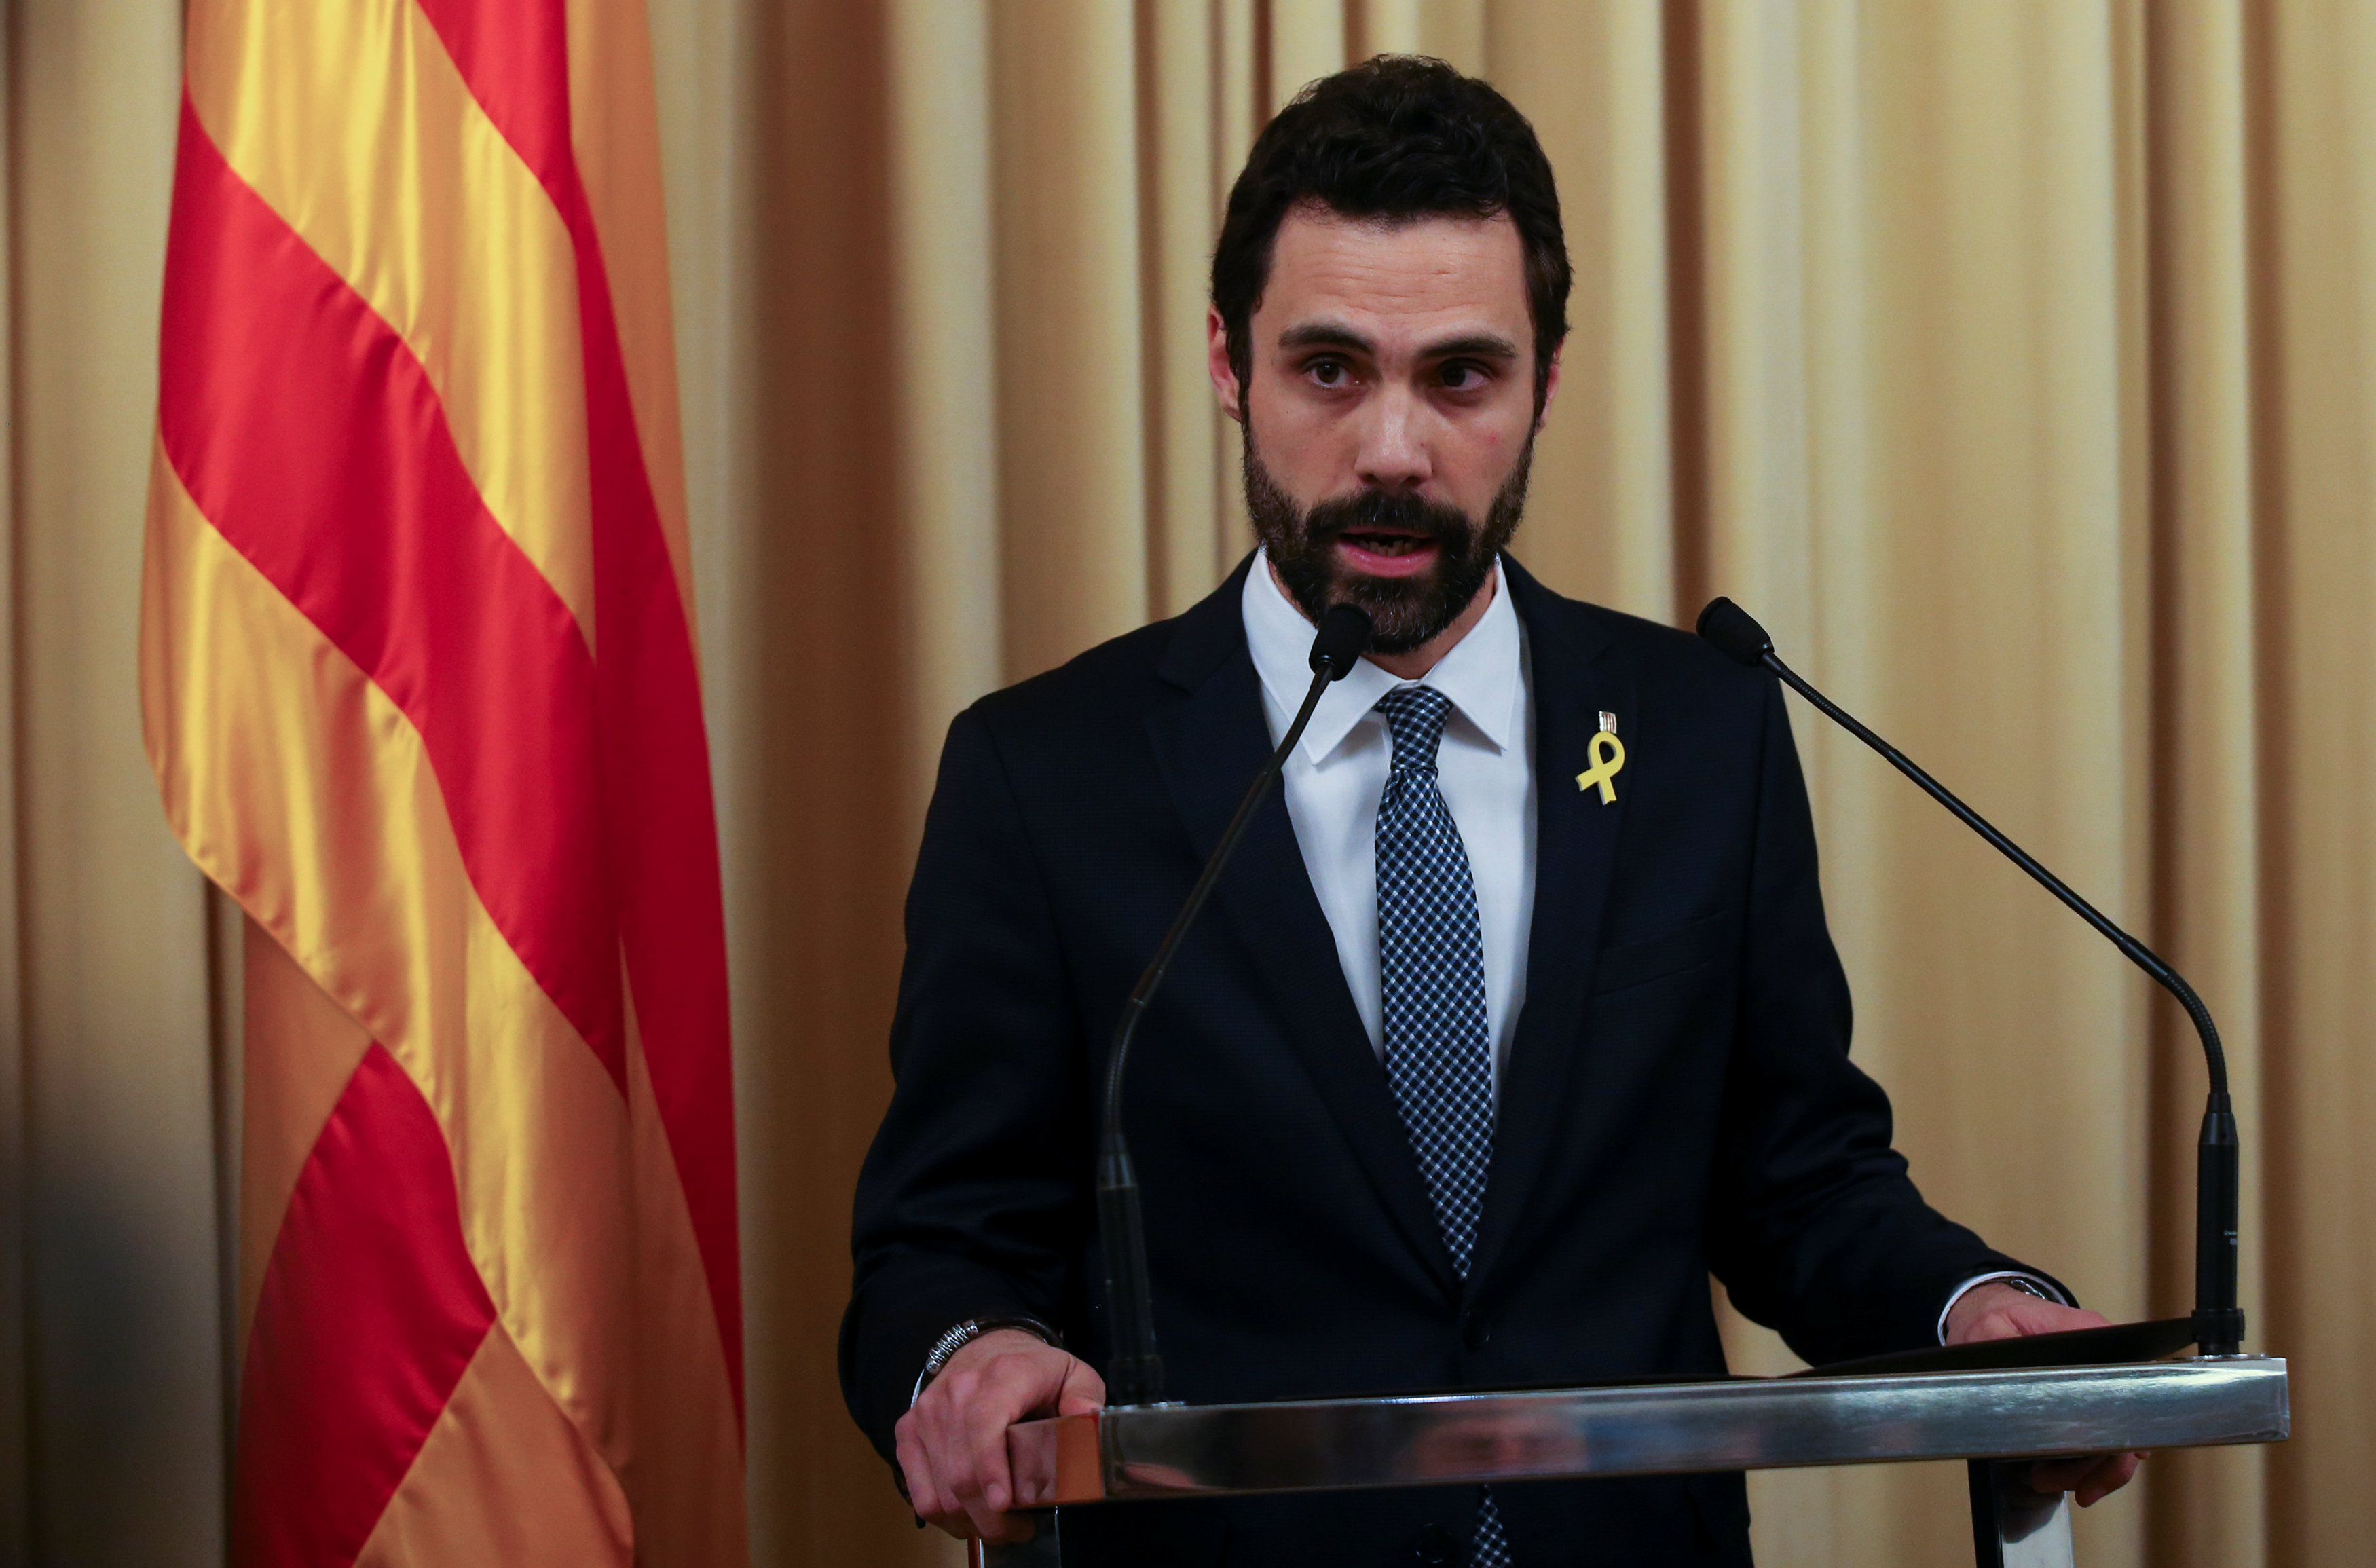 El Parlamento de Cataluña votó para que Puigdemont presida la Generalidad, informó este 22 de enero el presidente Roger Torrent